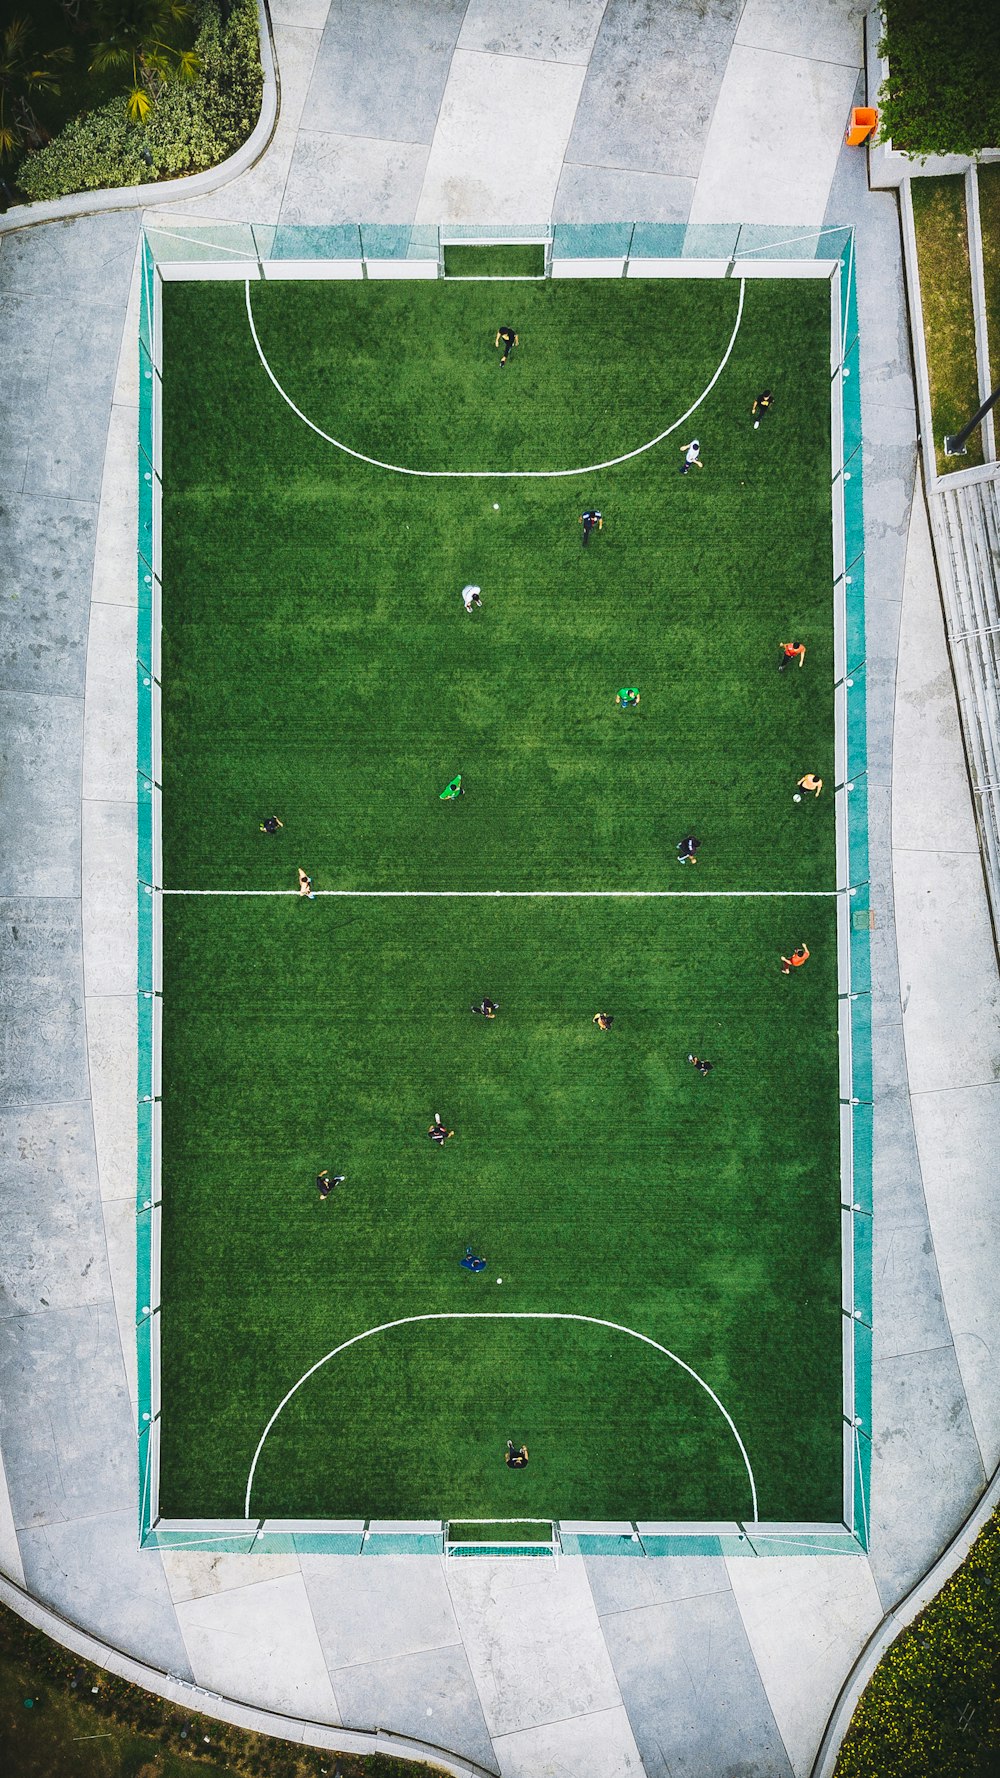 サッカーをする人々の航空写真